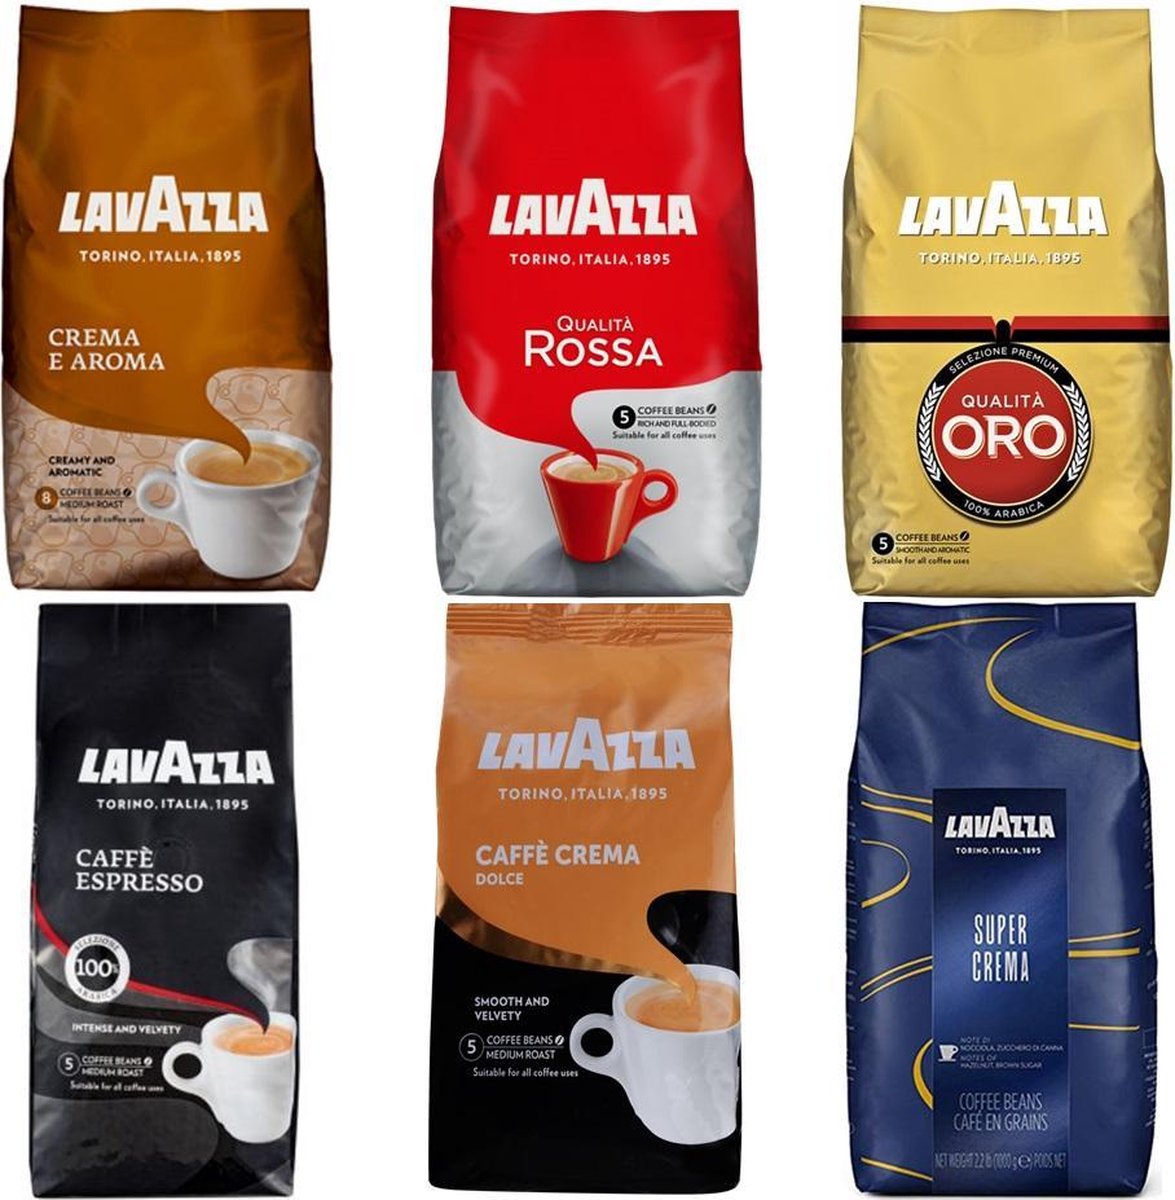 Pack d'échantillons Lavazza Grains de café - 6 x 1 kg